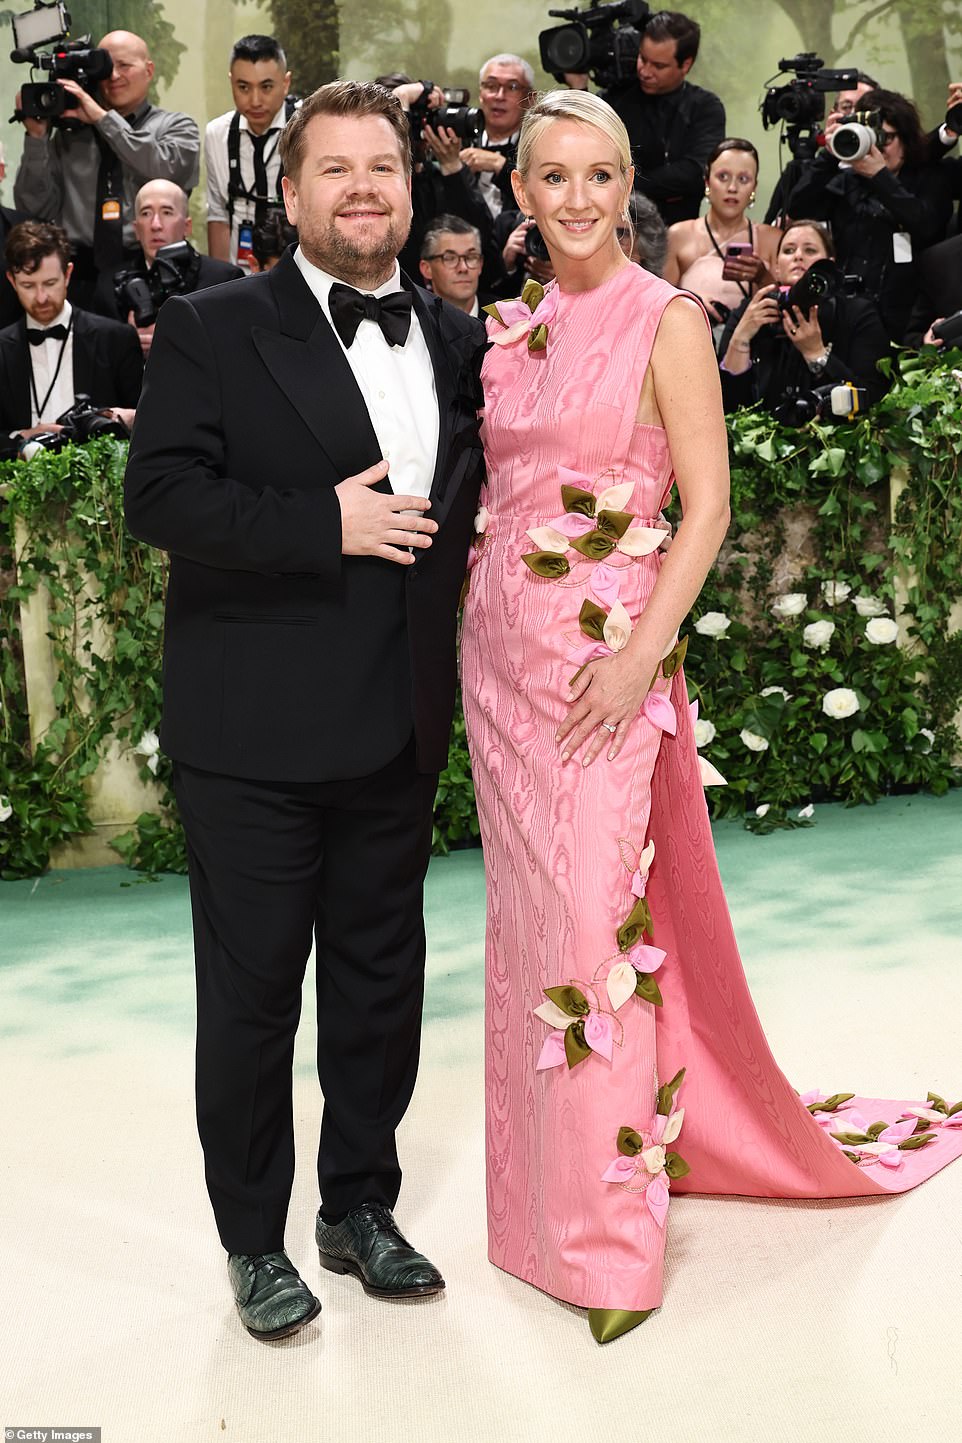 وبدا جيمس كوردن أنيقا ببدلة رسمية سوداء كلاسيكية بينما وقف بجانب زوجته جوليا كاري التي تألقت بفستان وردي بلا أكمام مزين بالورود.